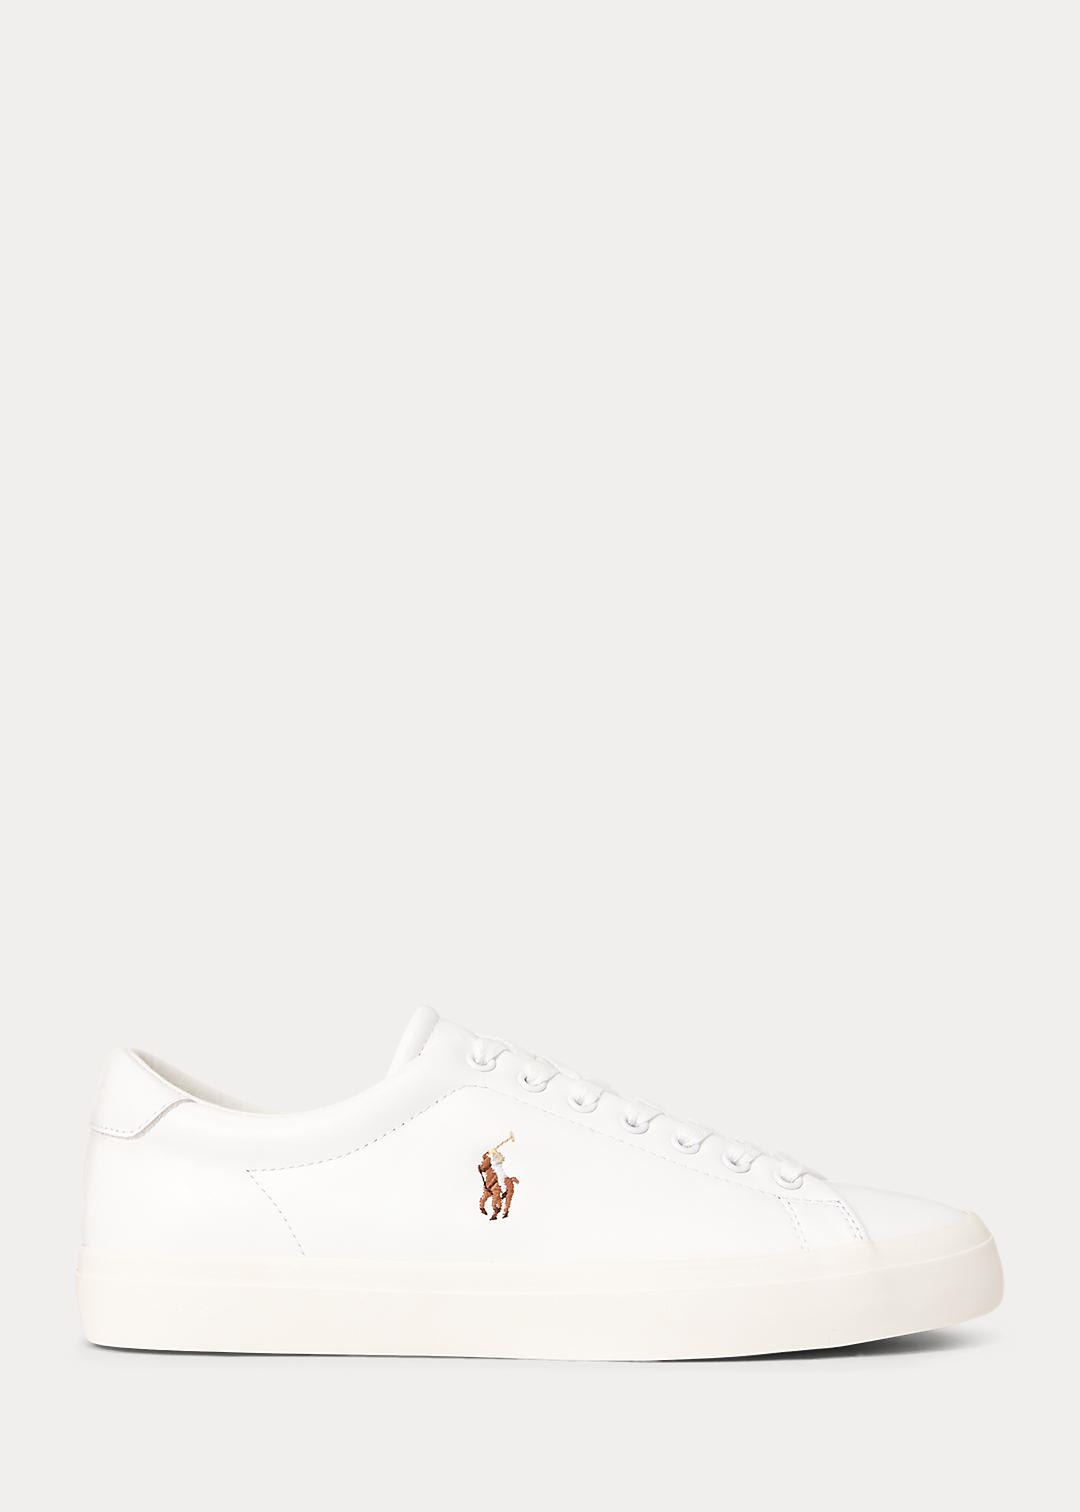 inzet Willen vrek Men's Longwood Leather Sneaker | Ralph Lauren